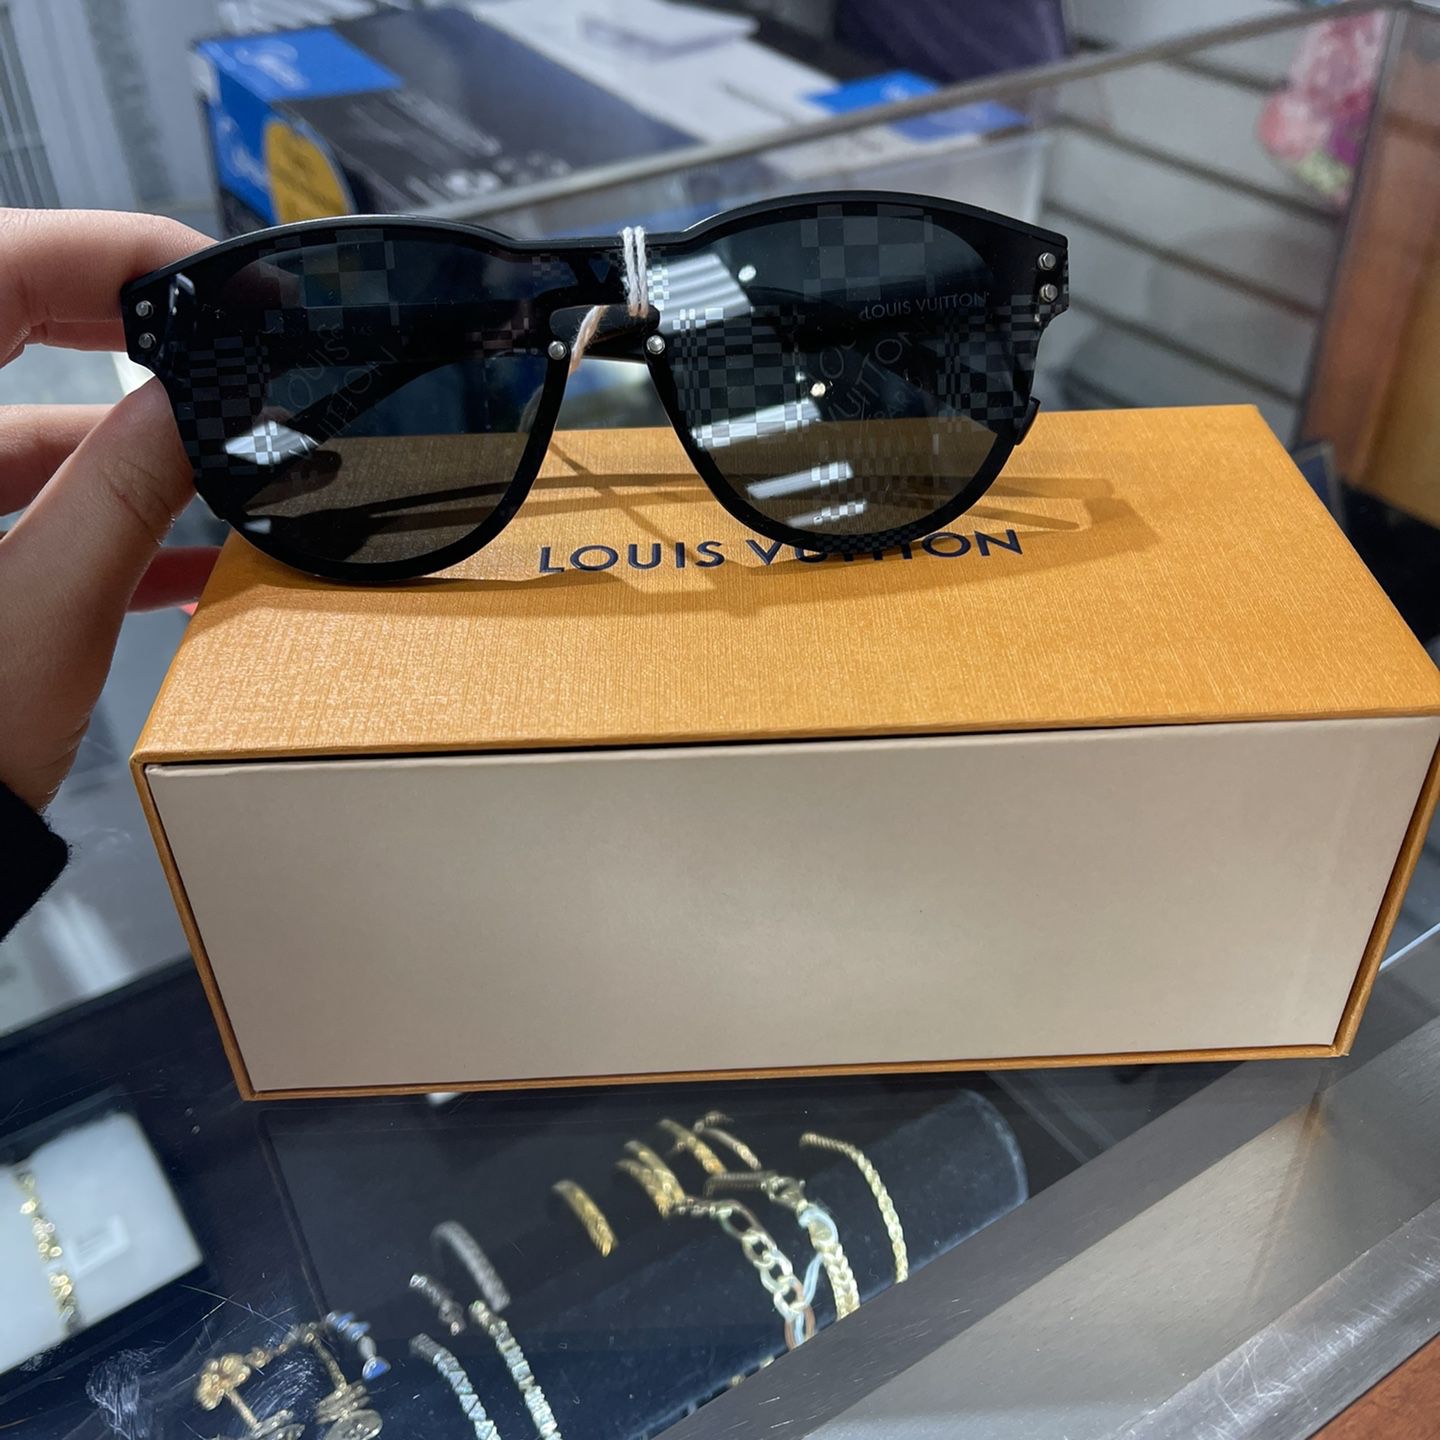 Louis VUITTON Sunglasses Louis VUITTON LV Waimea Black for Sale in